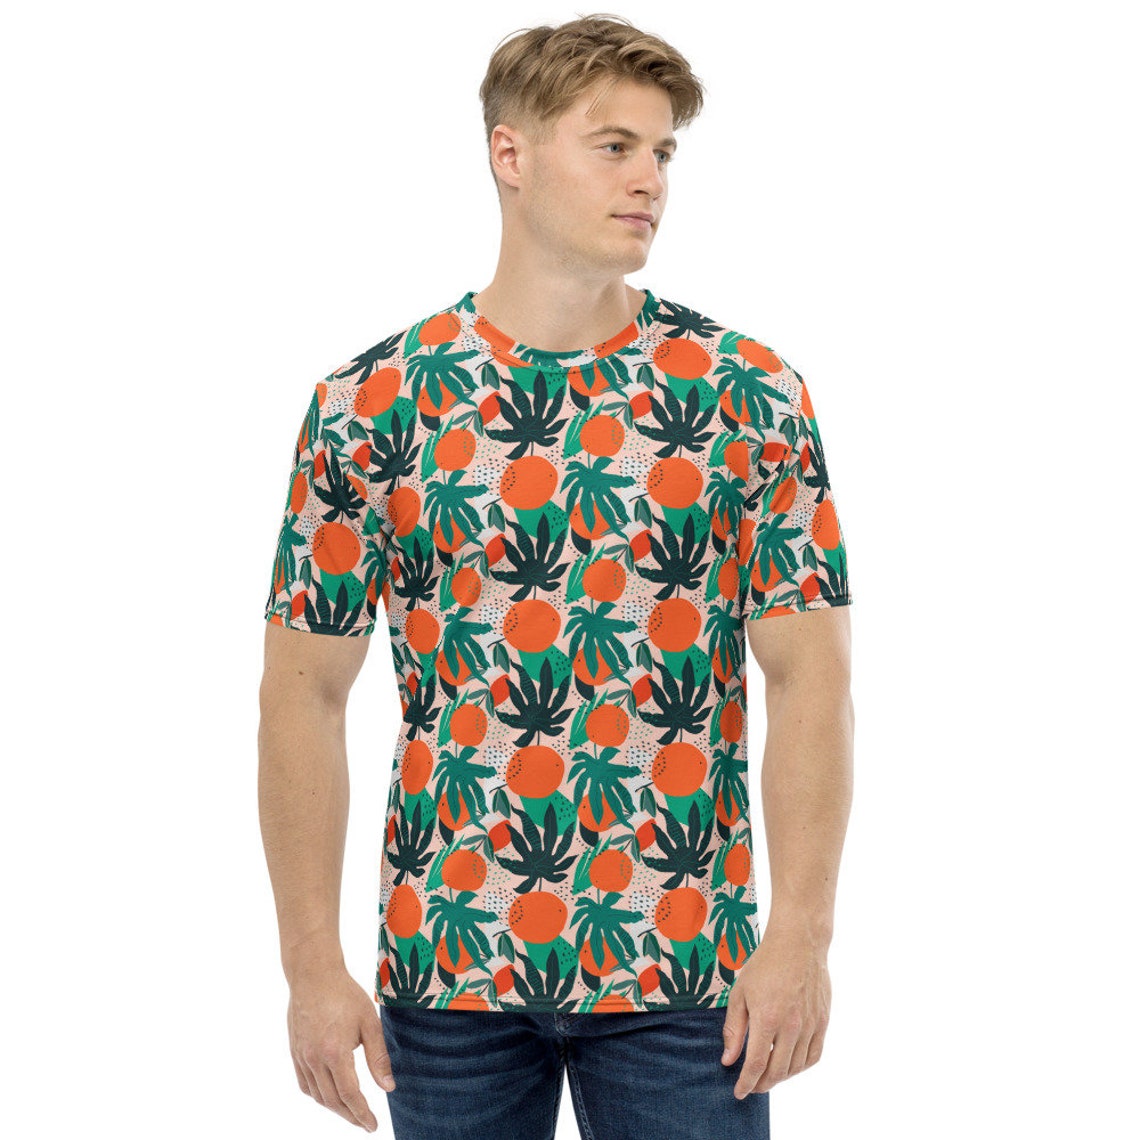 Oranges shirt for men Funny mens shirt Florida oranges | Etsy